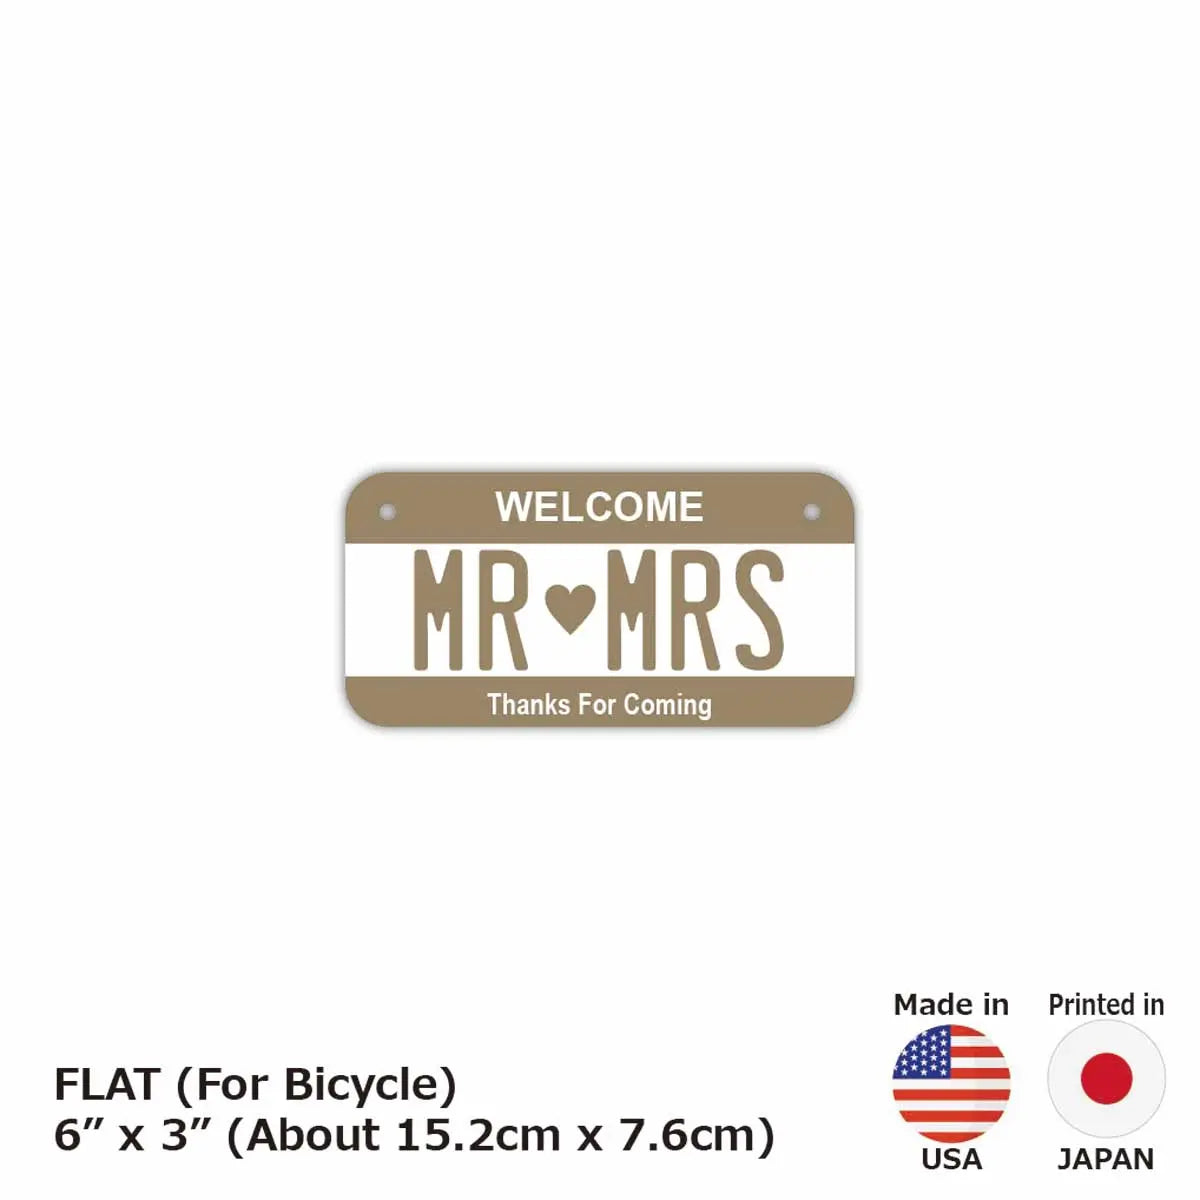 【小・自転車用】カラー・ベージュ/オリジナルアメリカナンバープレート PL8HERO